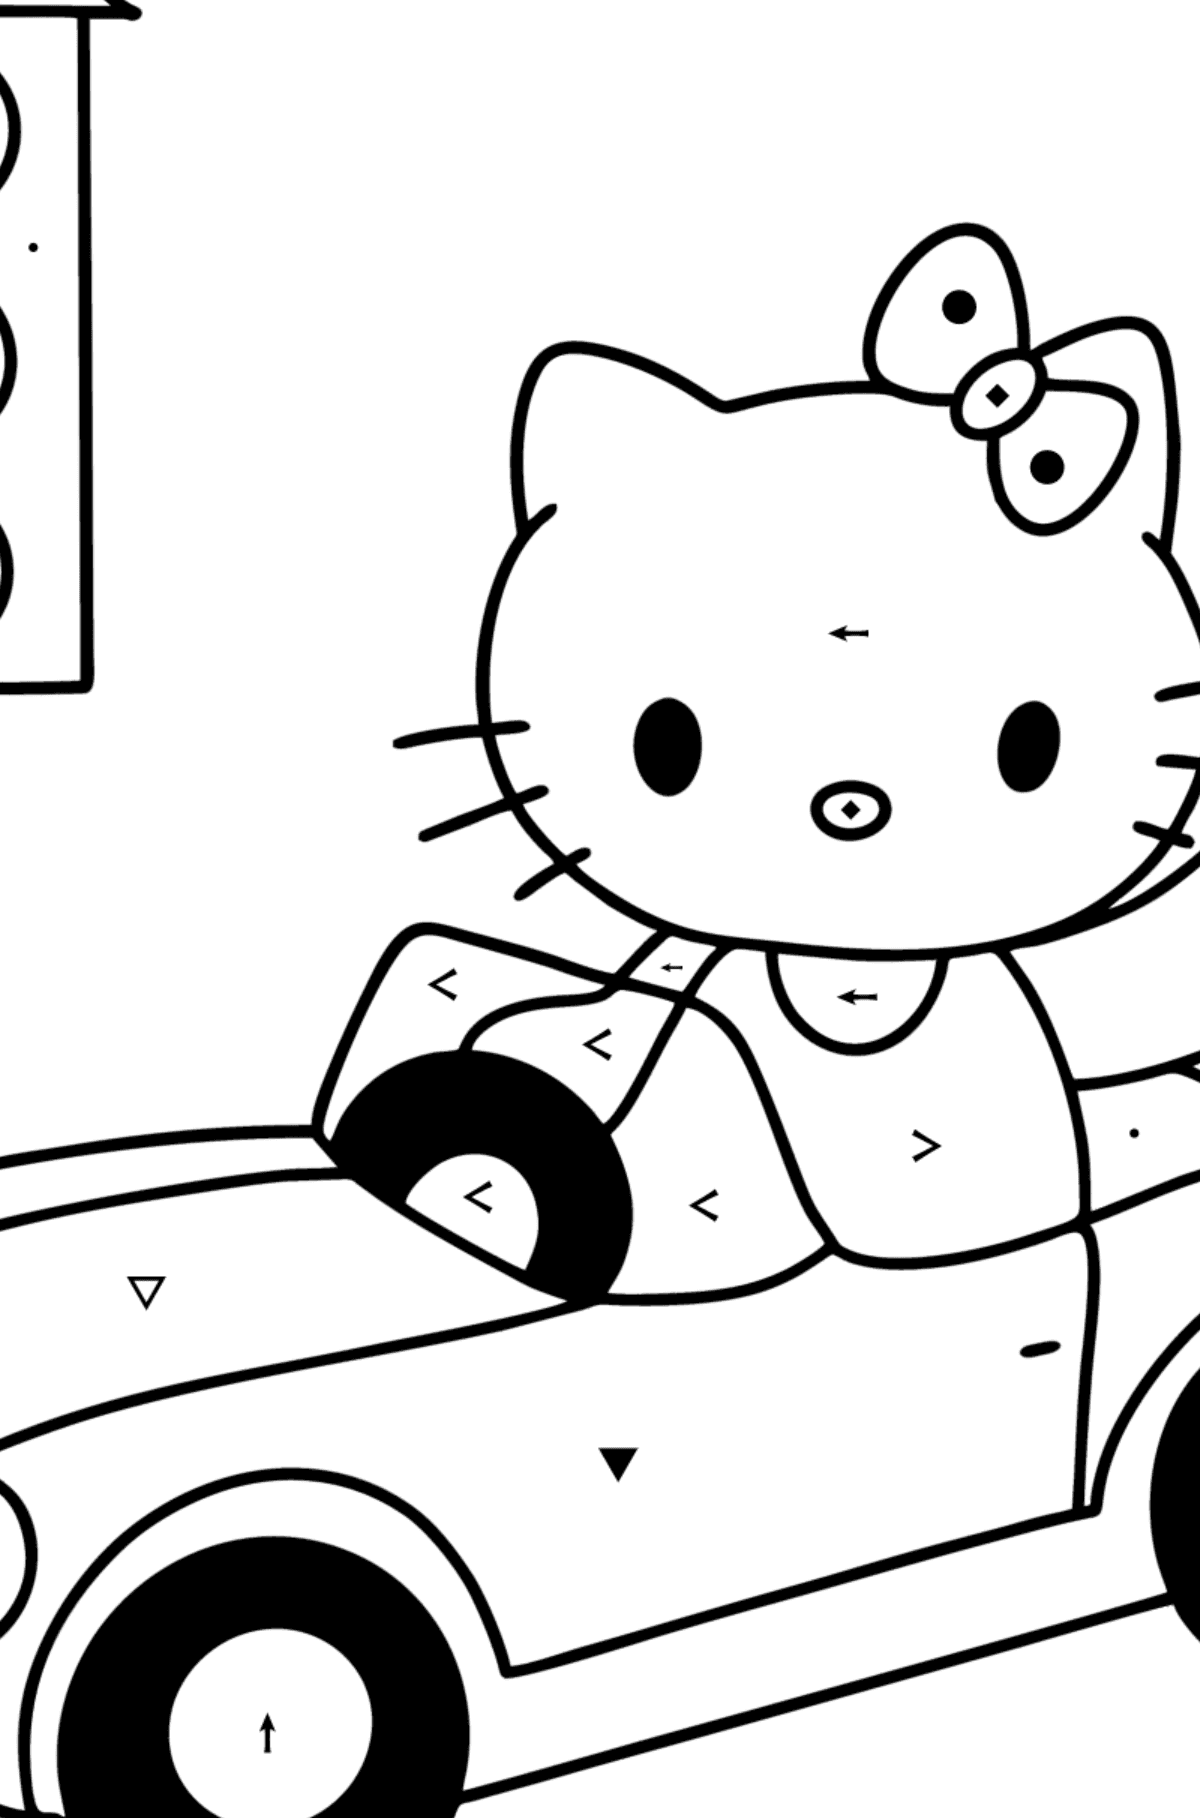 Boyama sayfası Hello Kitty ve araba - Sembollerle Boyama çocuklar için